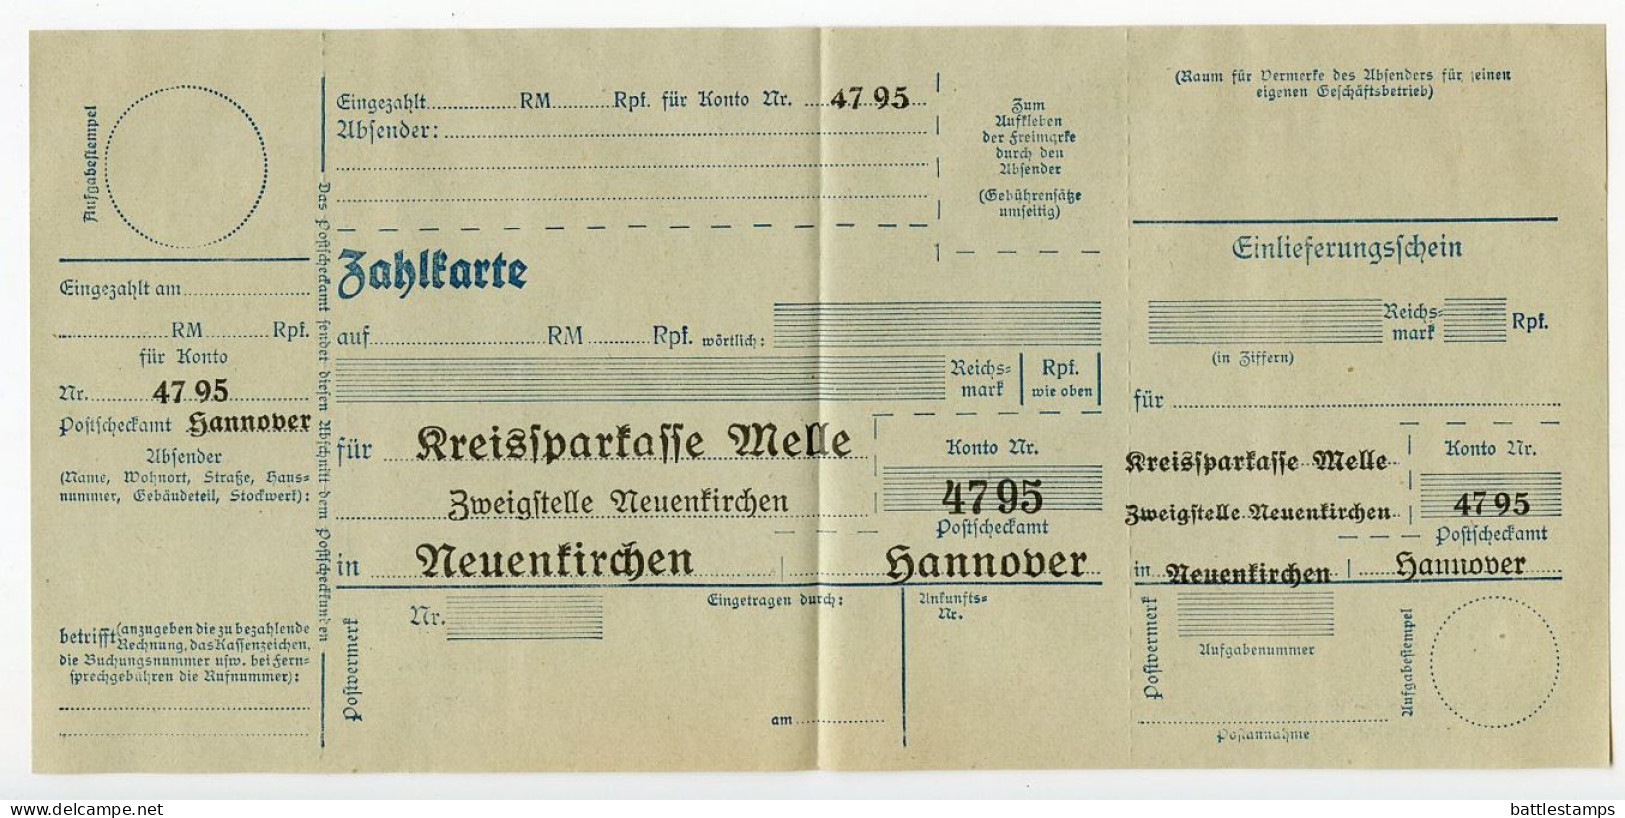 Germany 1934 Cover W/ Letter & Zahlkarte; Neuenkirchen (Kr. Melle) - Kreissparkasse Melle To Schiplage; 3pf. Hindenburg - Storia Postale